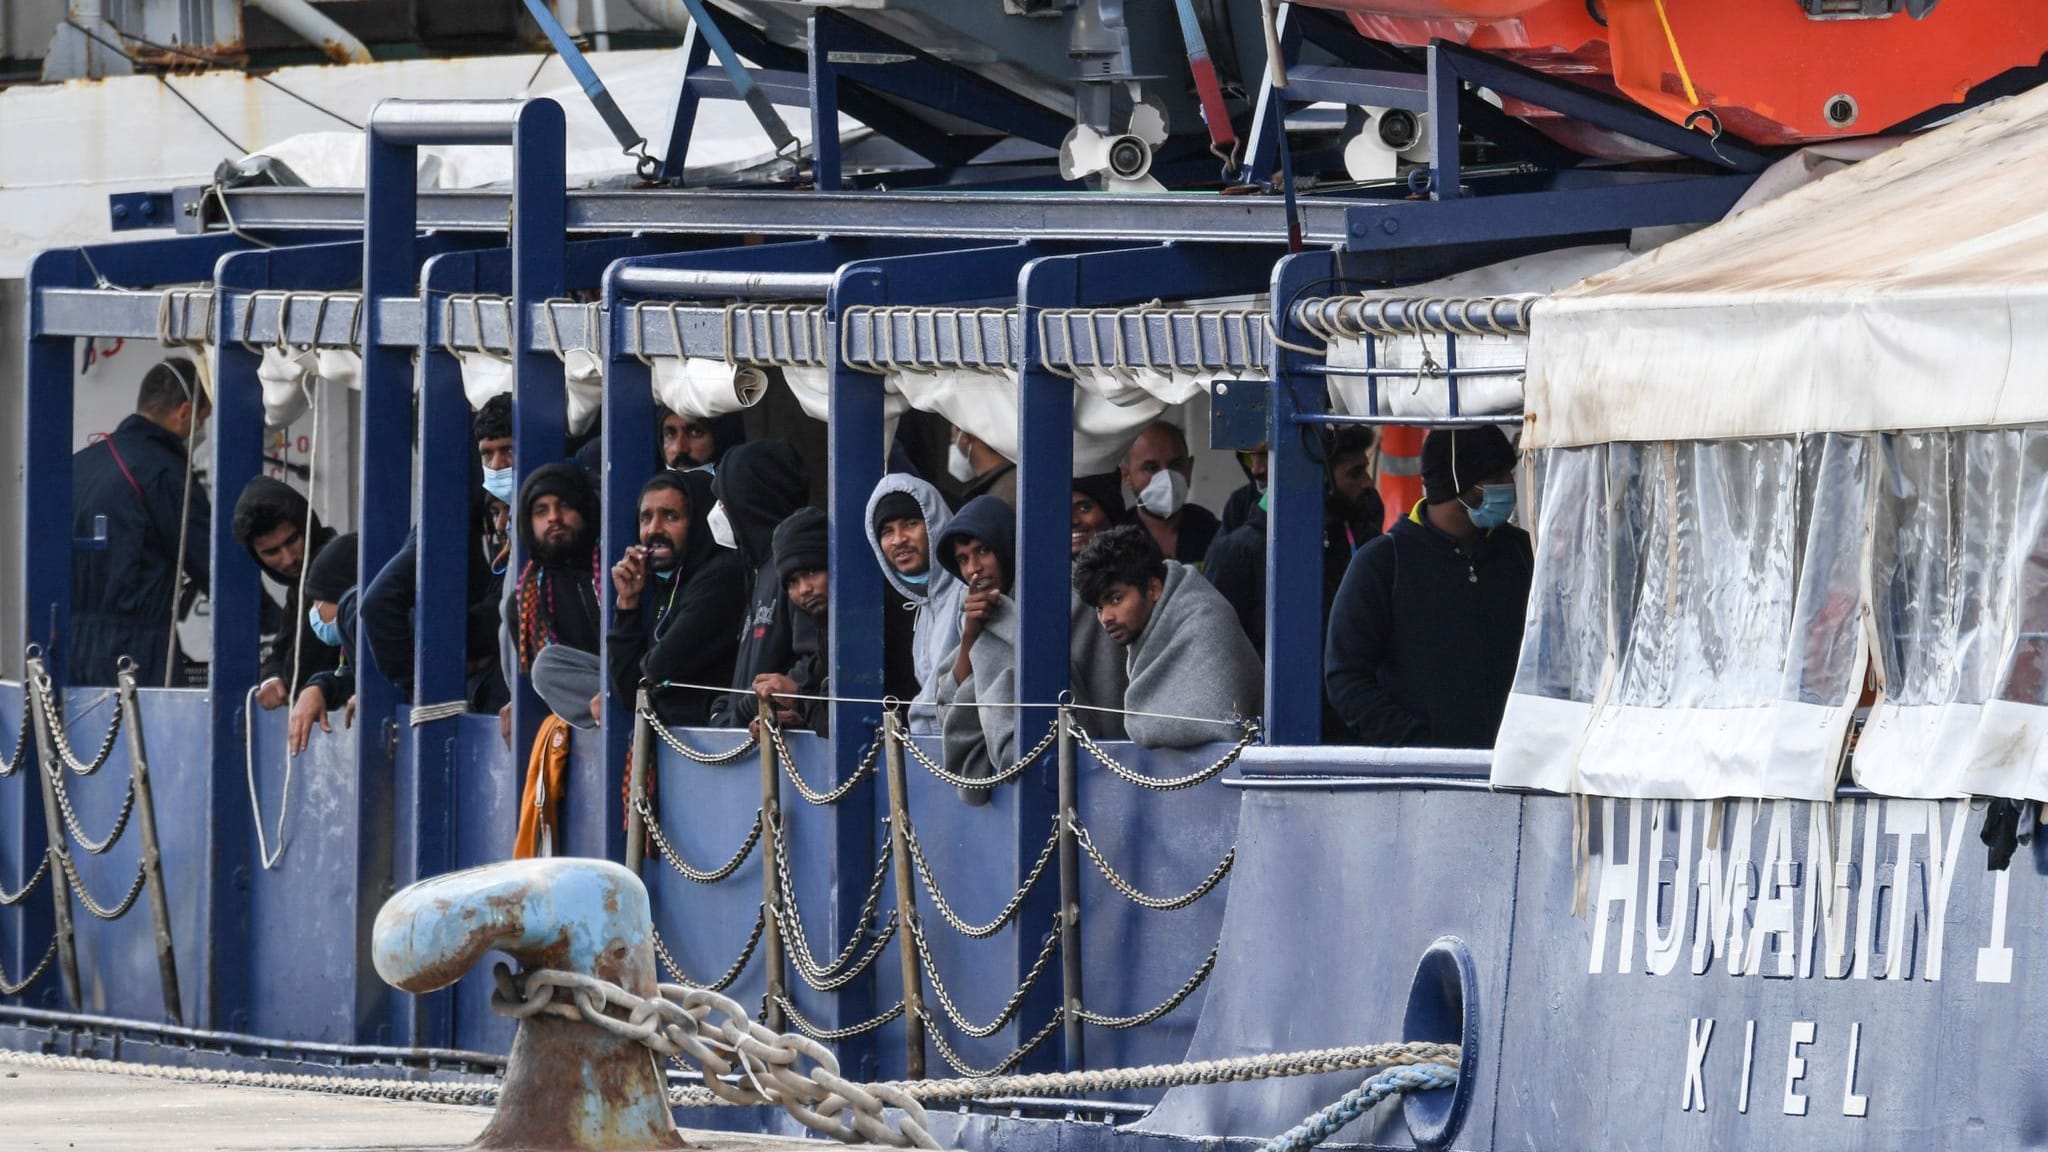 Italien: Migranten auf Rettungsschiff protestieren mit Hungerstreik